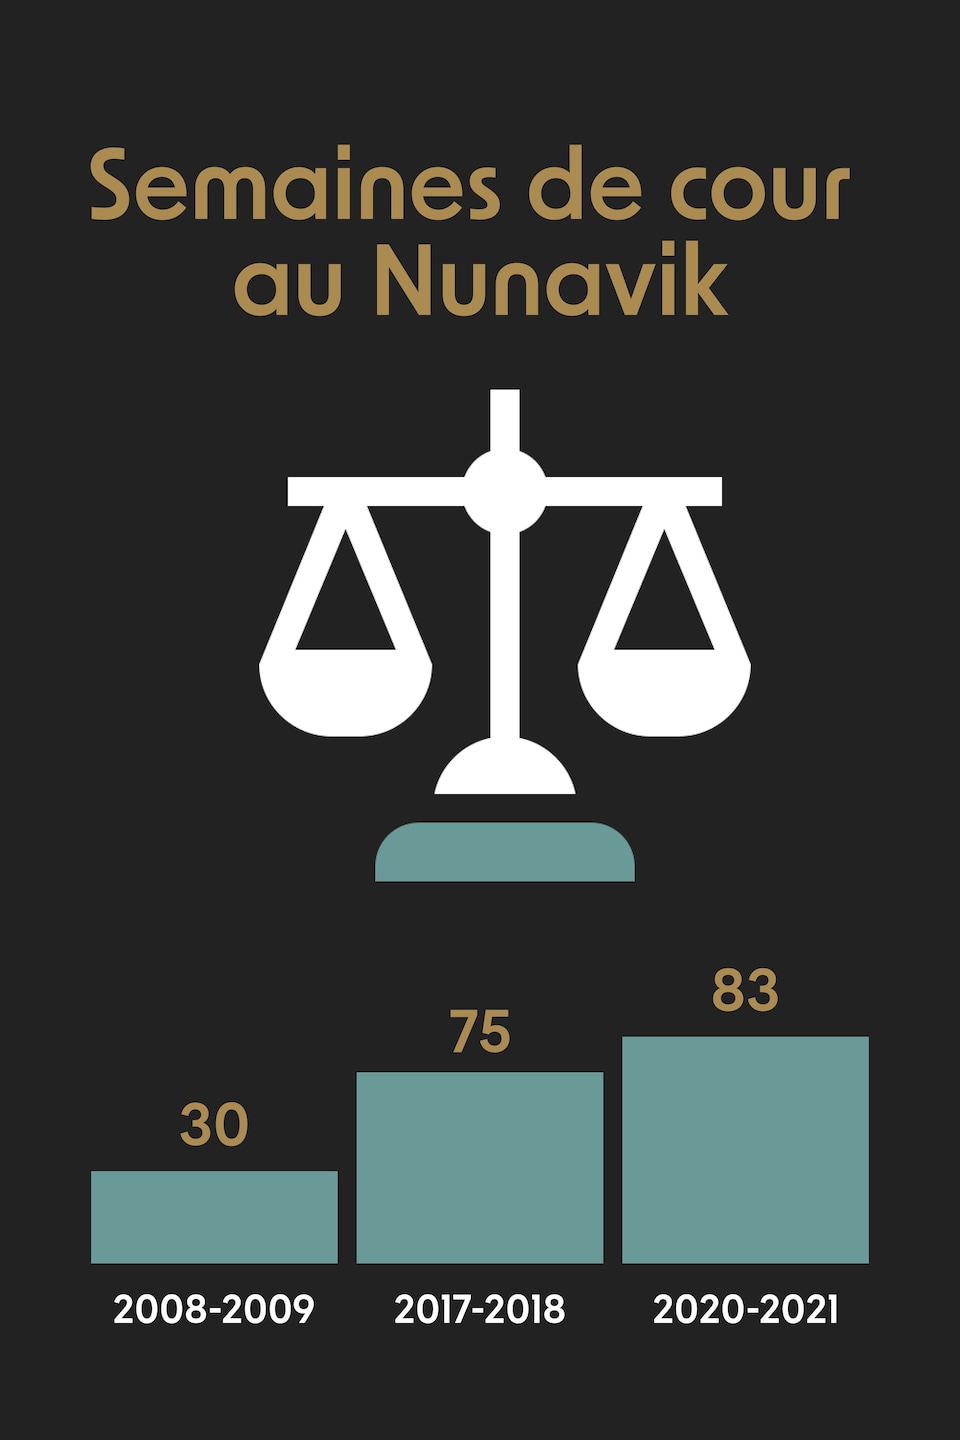 Une balance et des barres verticales qui indiquent que le nombre de semaines de cour au Nunavik en 2008 était de 30, en 2017 de 75 et en 2020 de 83.